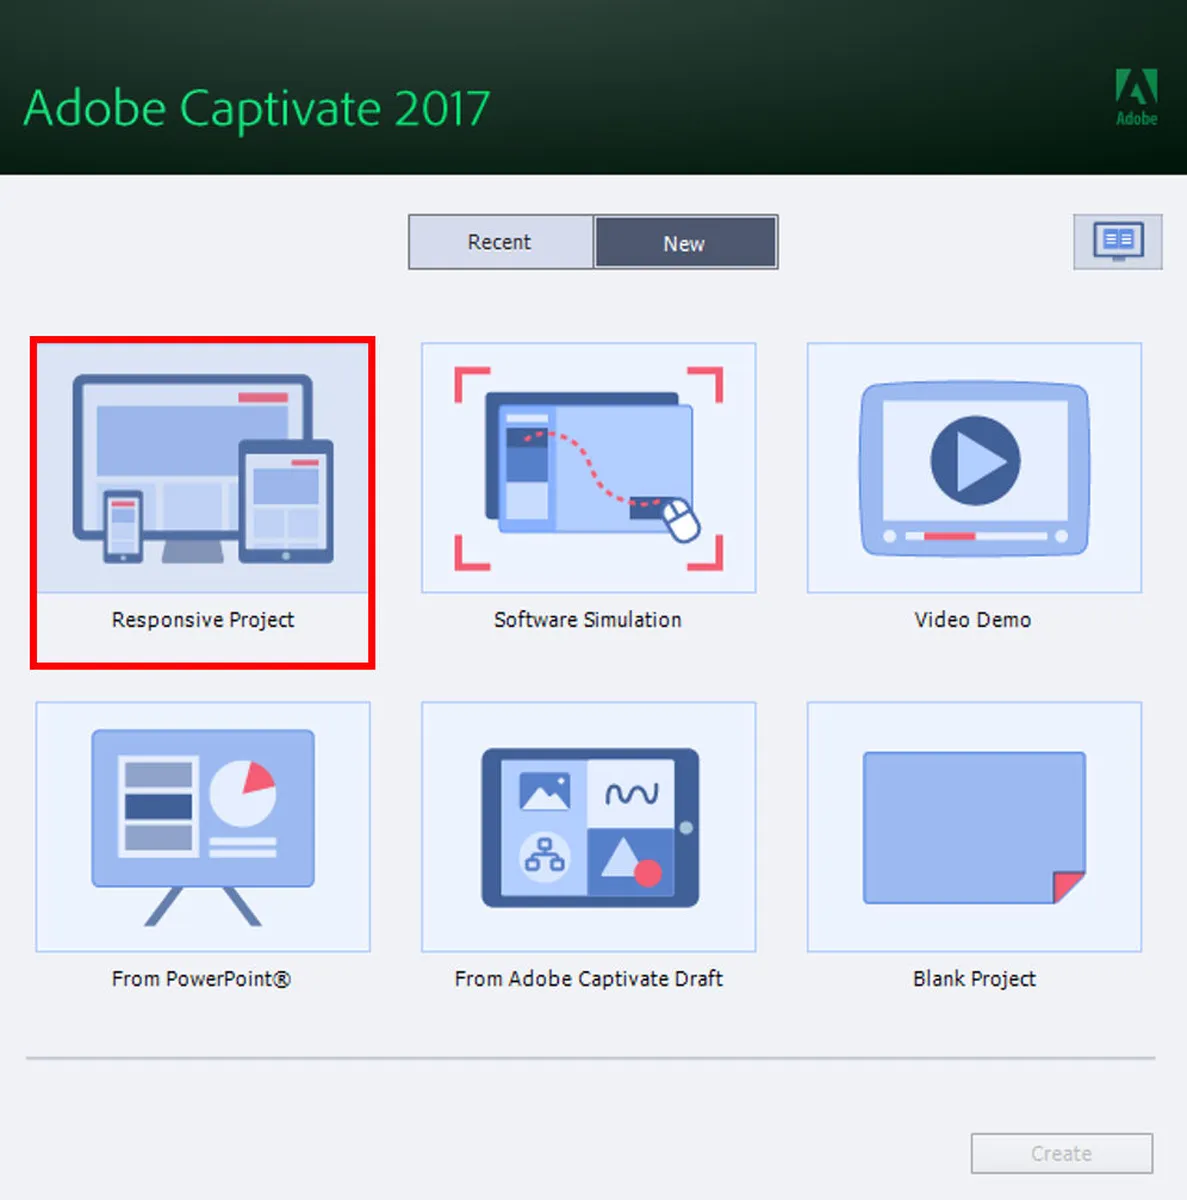 Adobe Captivate Features